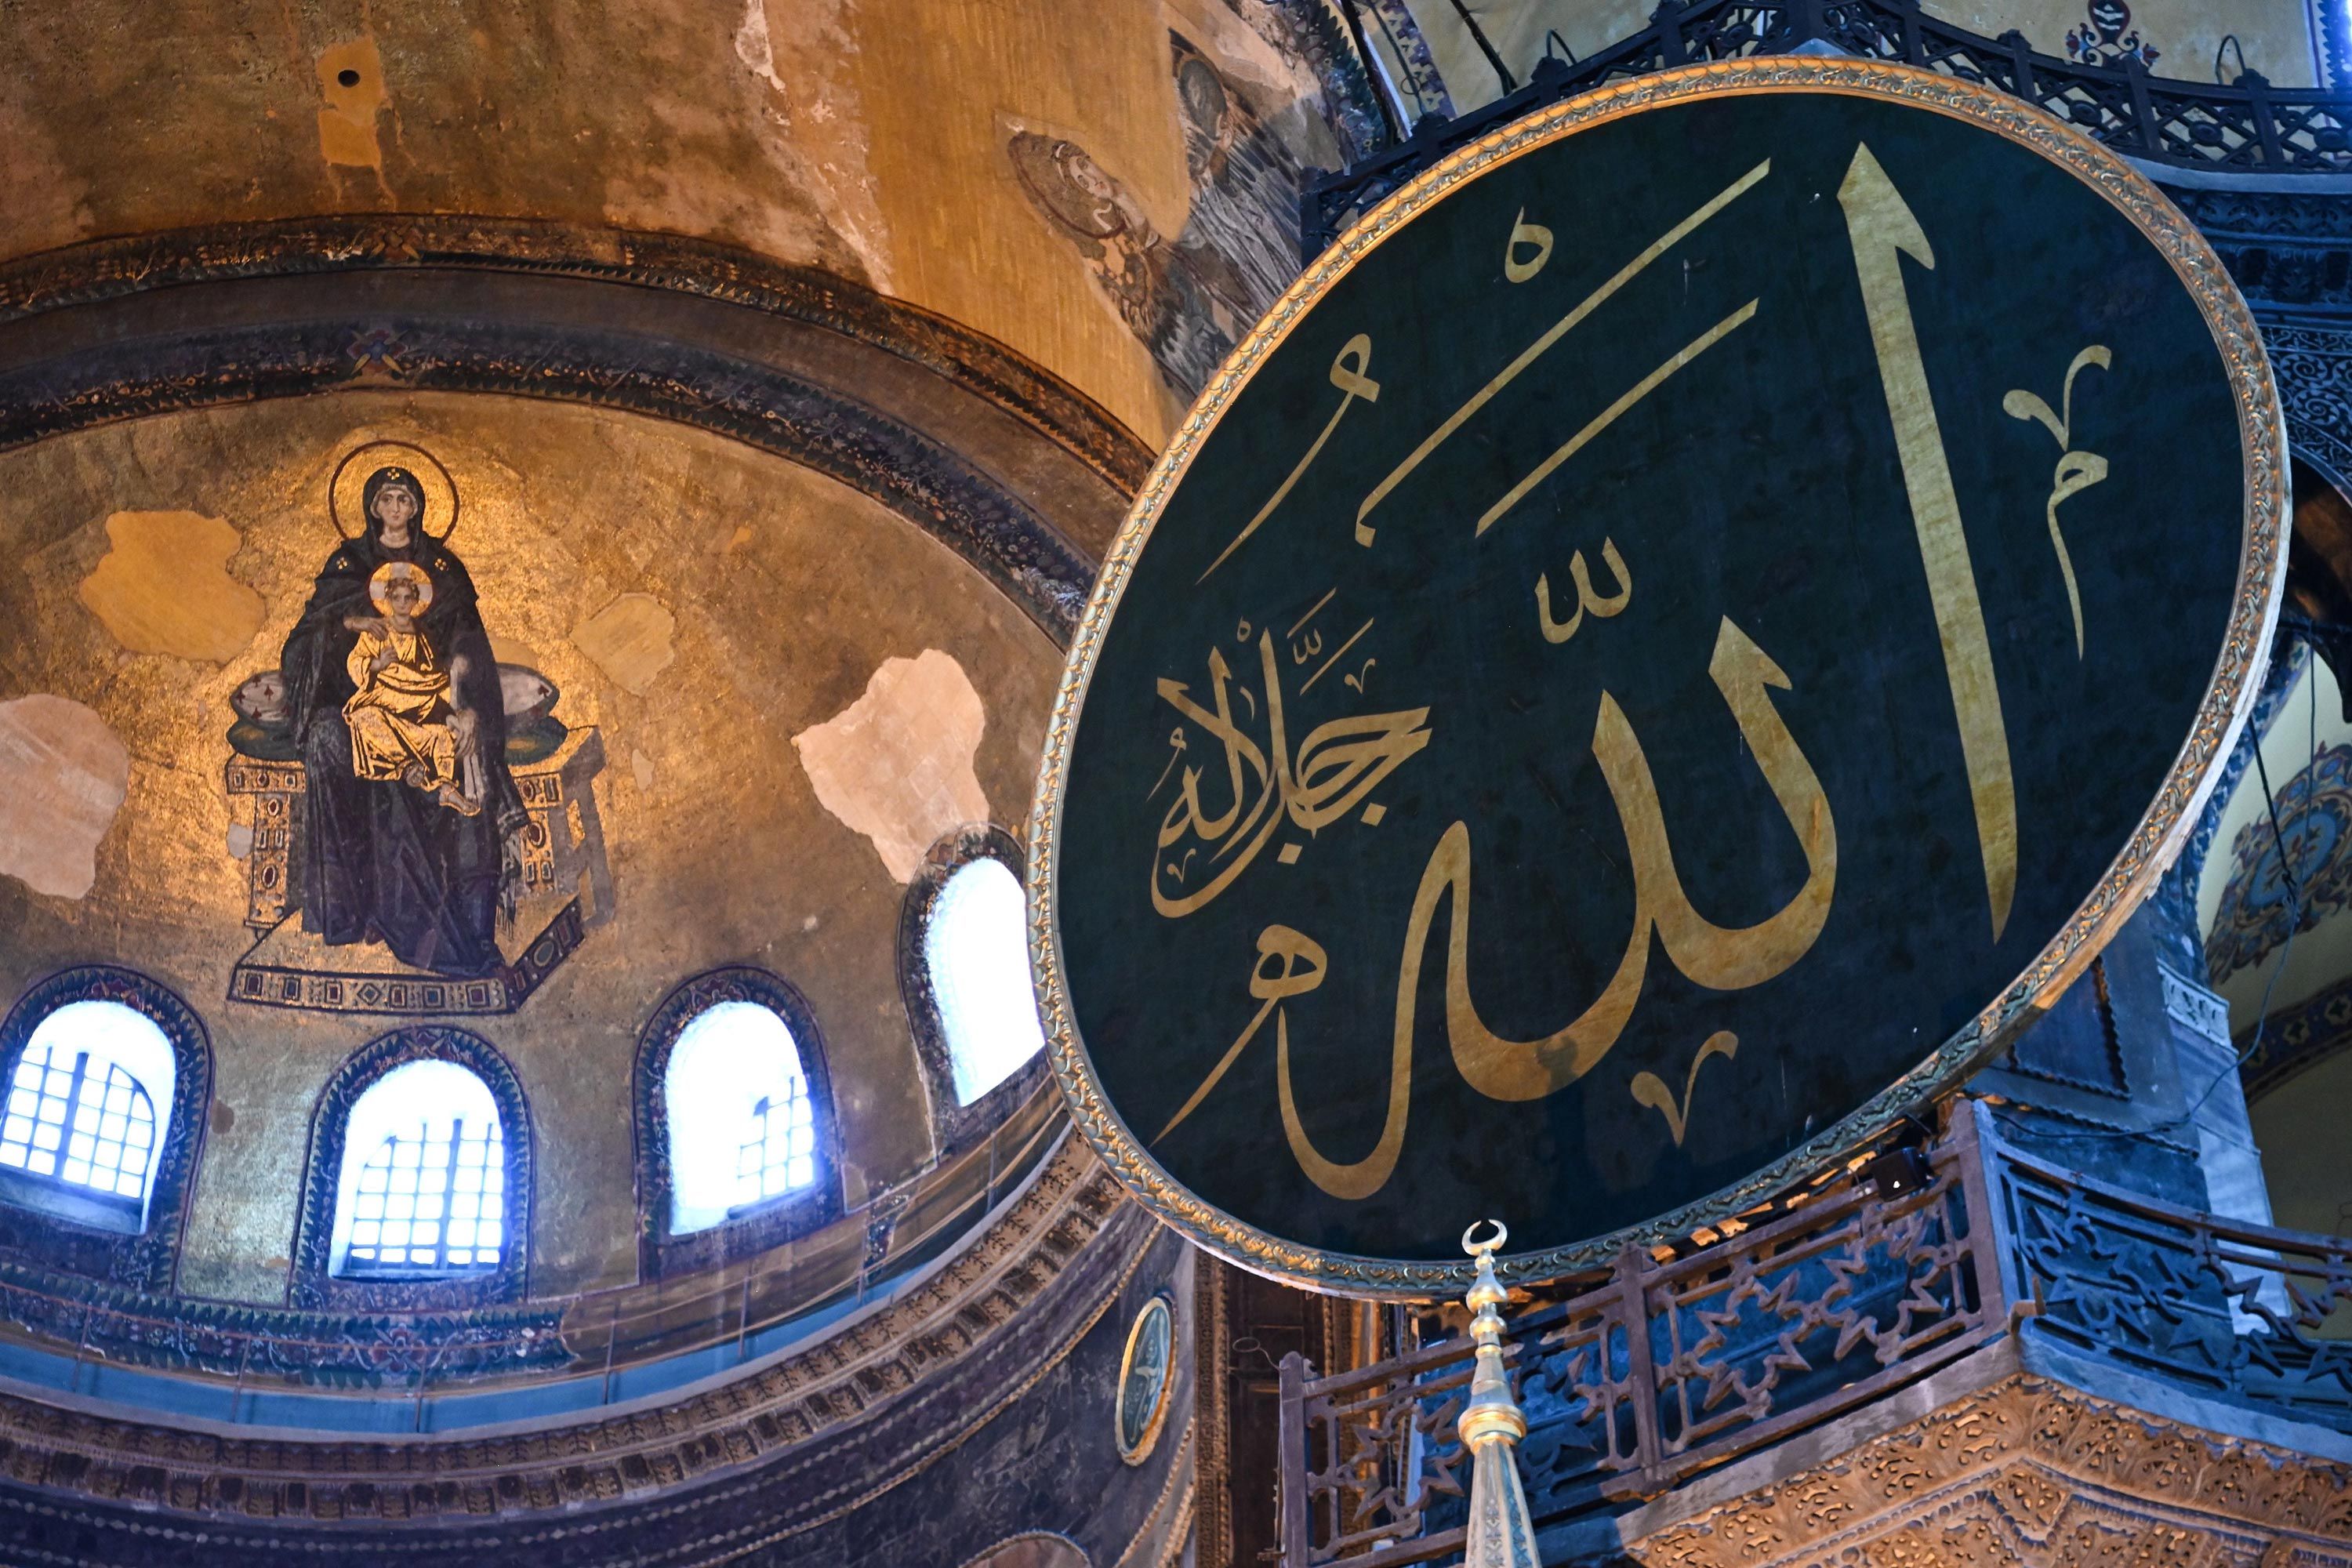 Візантійська ікона та арабська каліграфія. Свята Софія. Стамбул, Туреччина - фото 53344